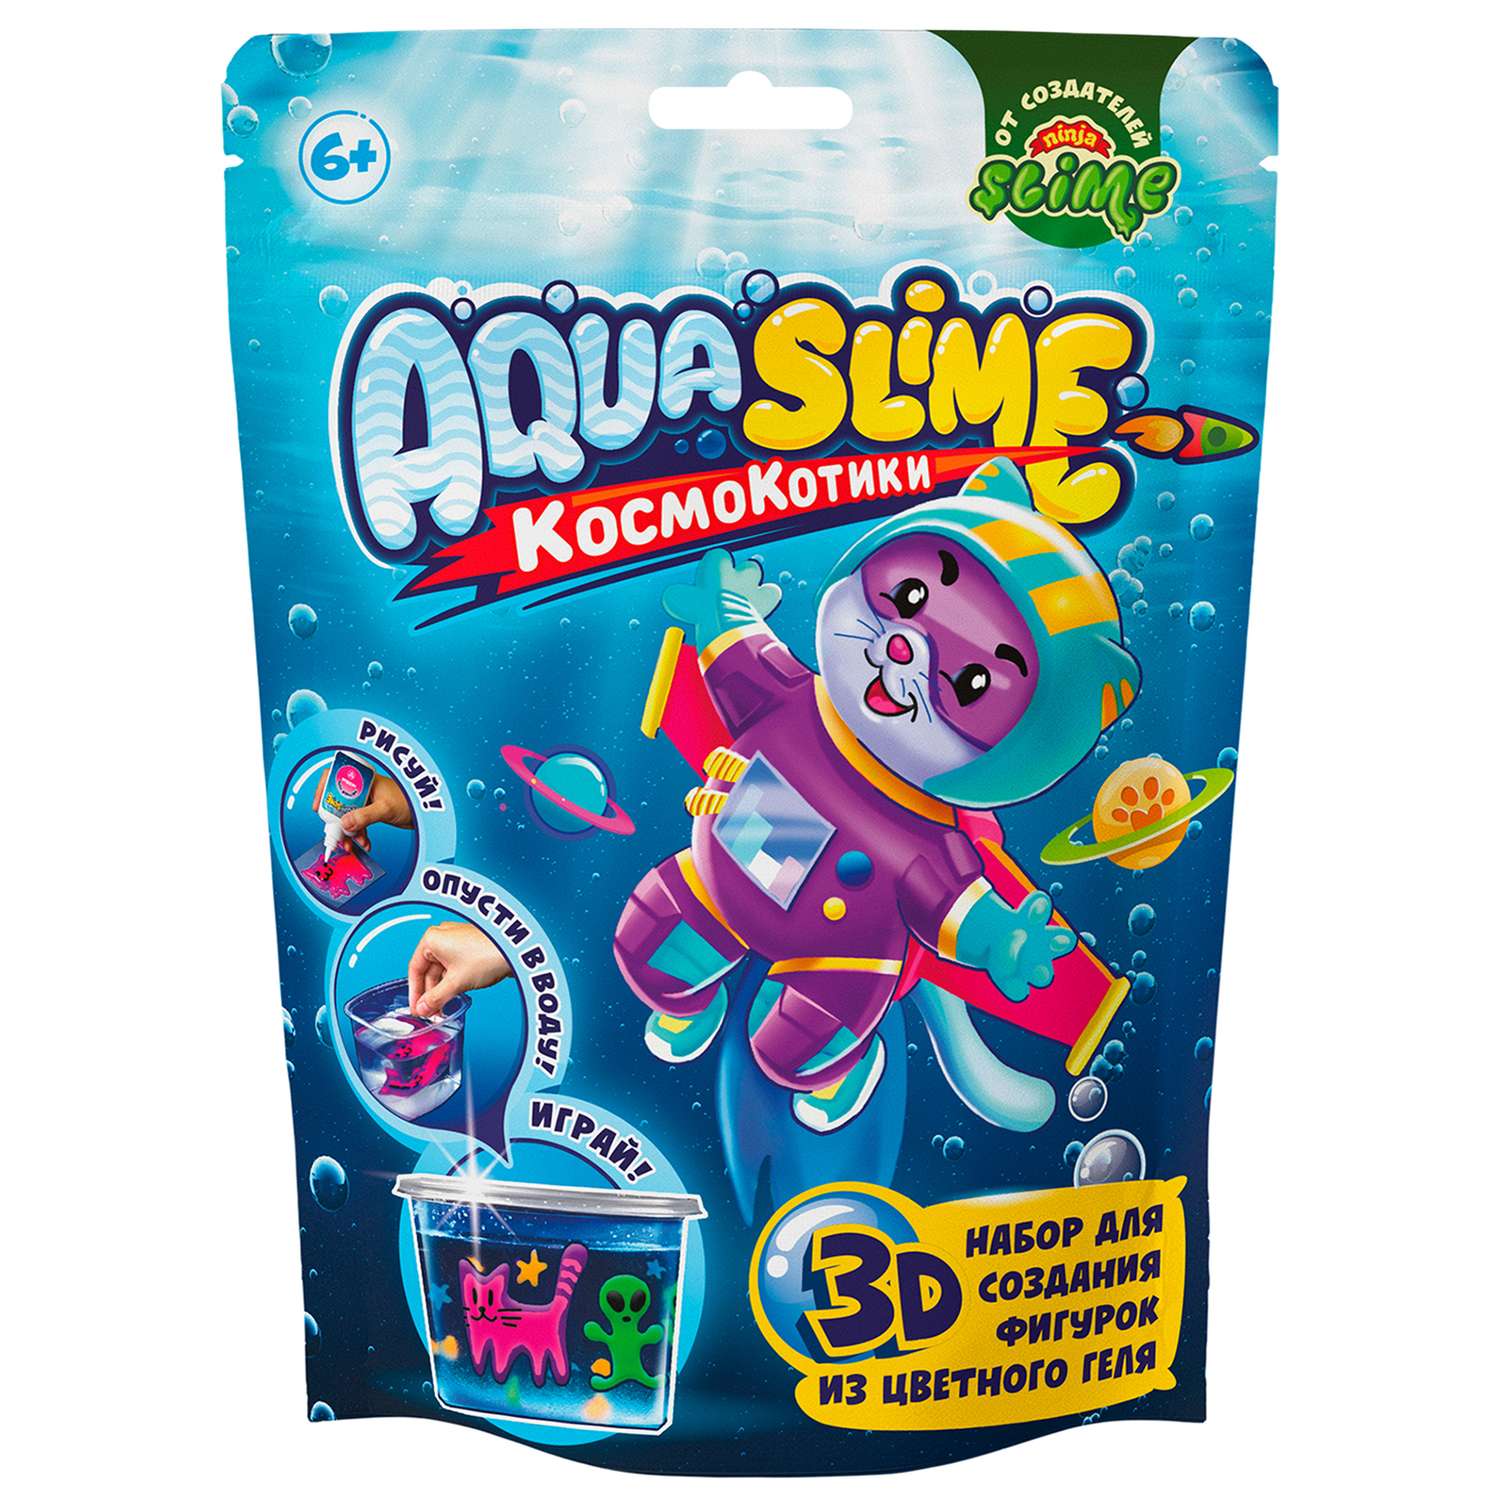 Набор для творчества Aqua Slime малый AQ003 - фото 1